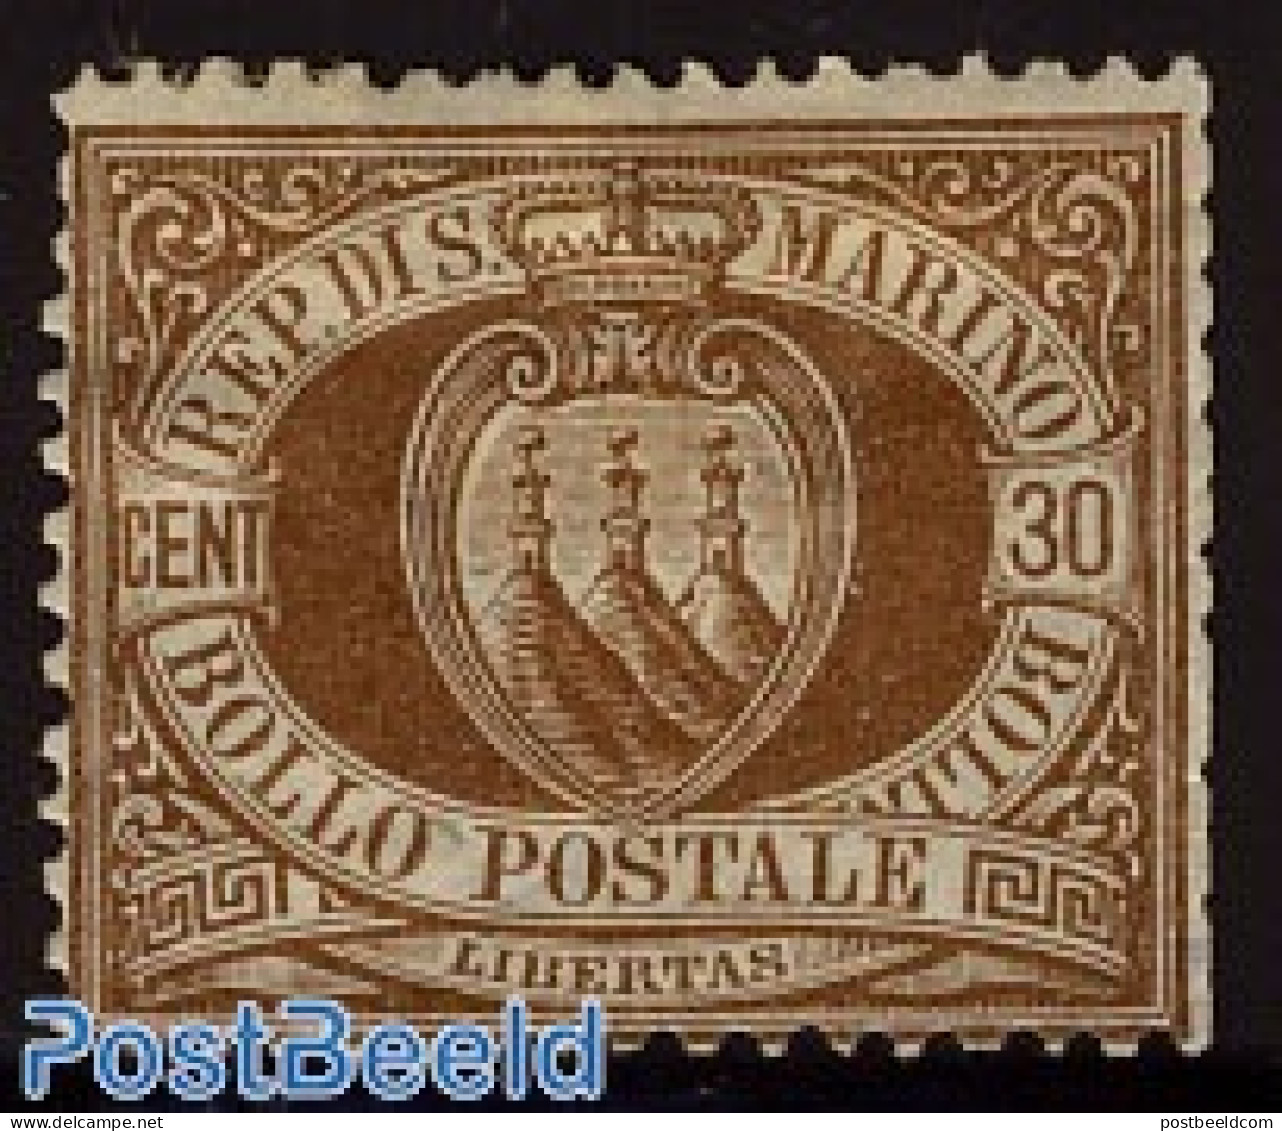 San Marino 1877 30c. Brown Unused Hinged, Unused (hinged) - Unused Stamps